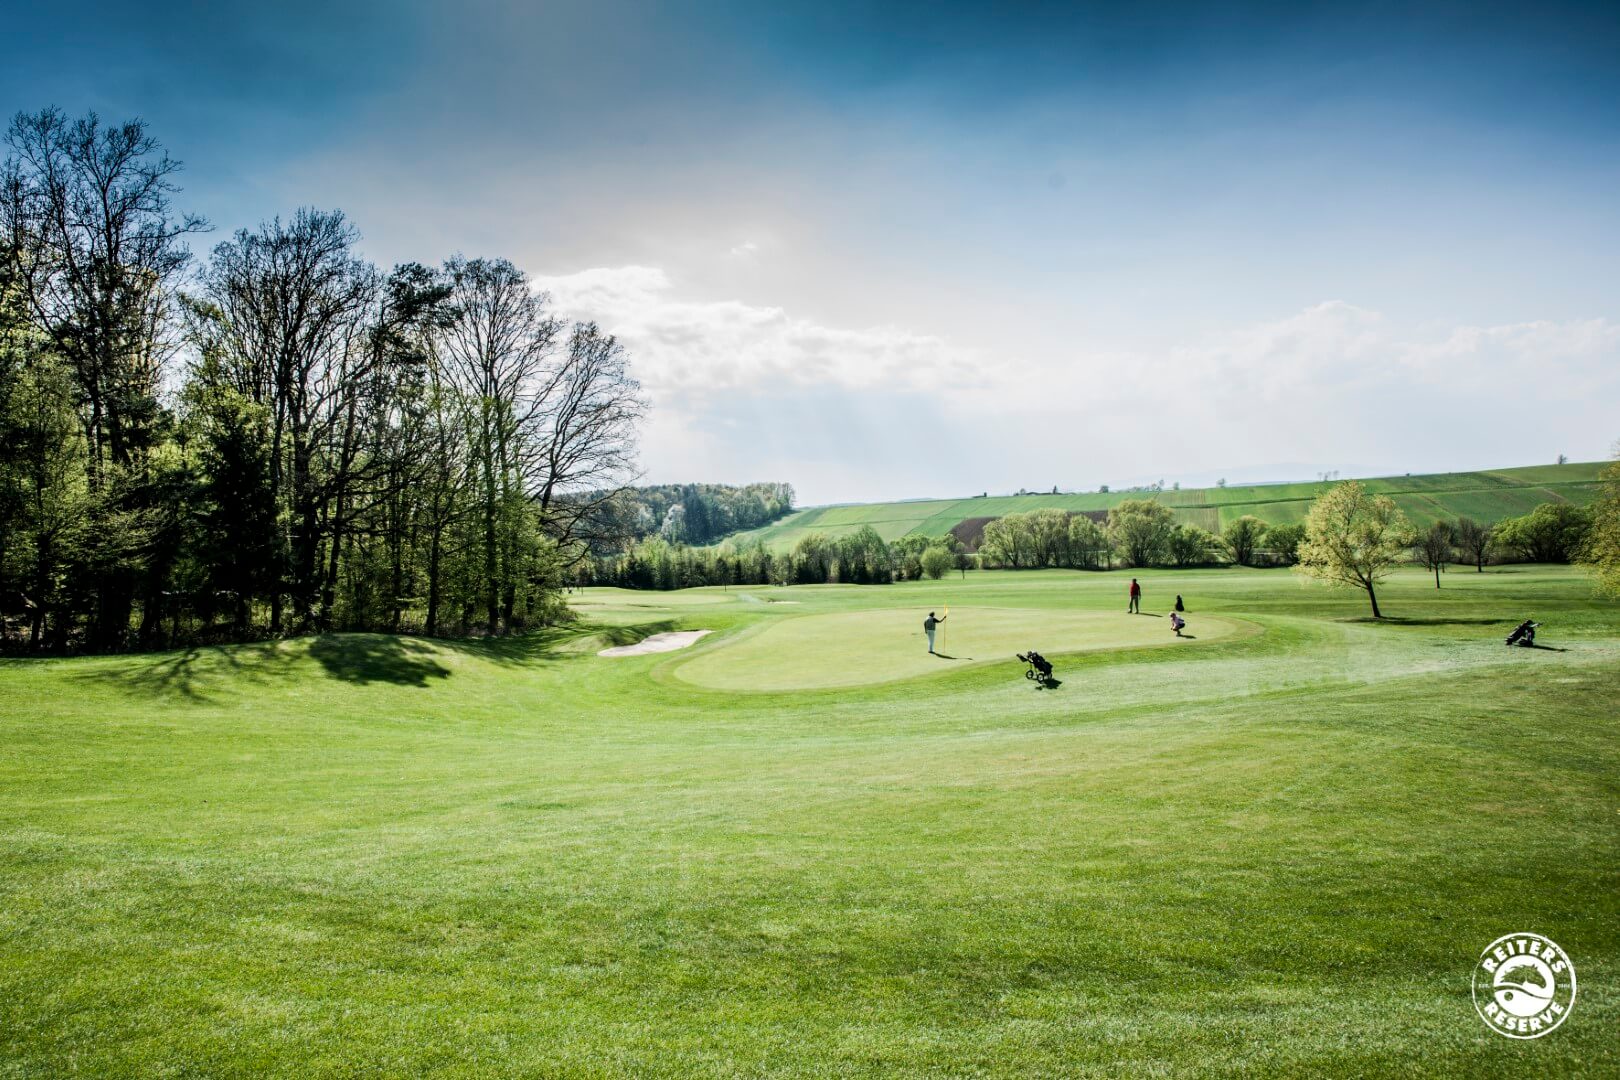 Golfspieler in einer weiten, hügeligen Landschaft, die das Grün eines gepflegten Golfplatzes genießen.